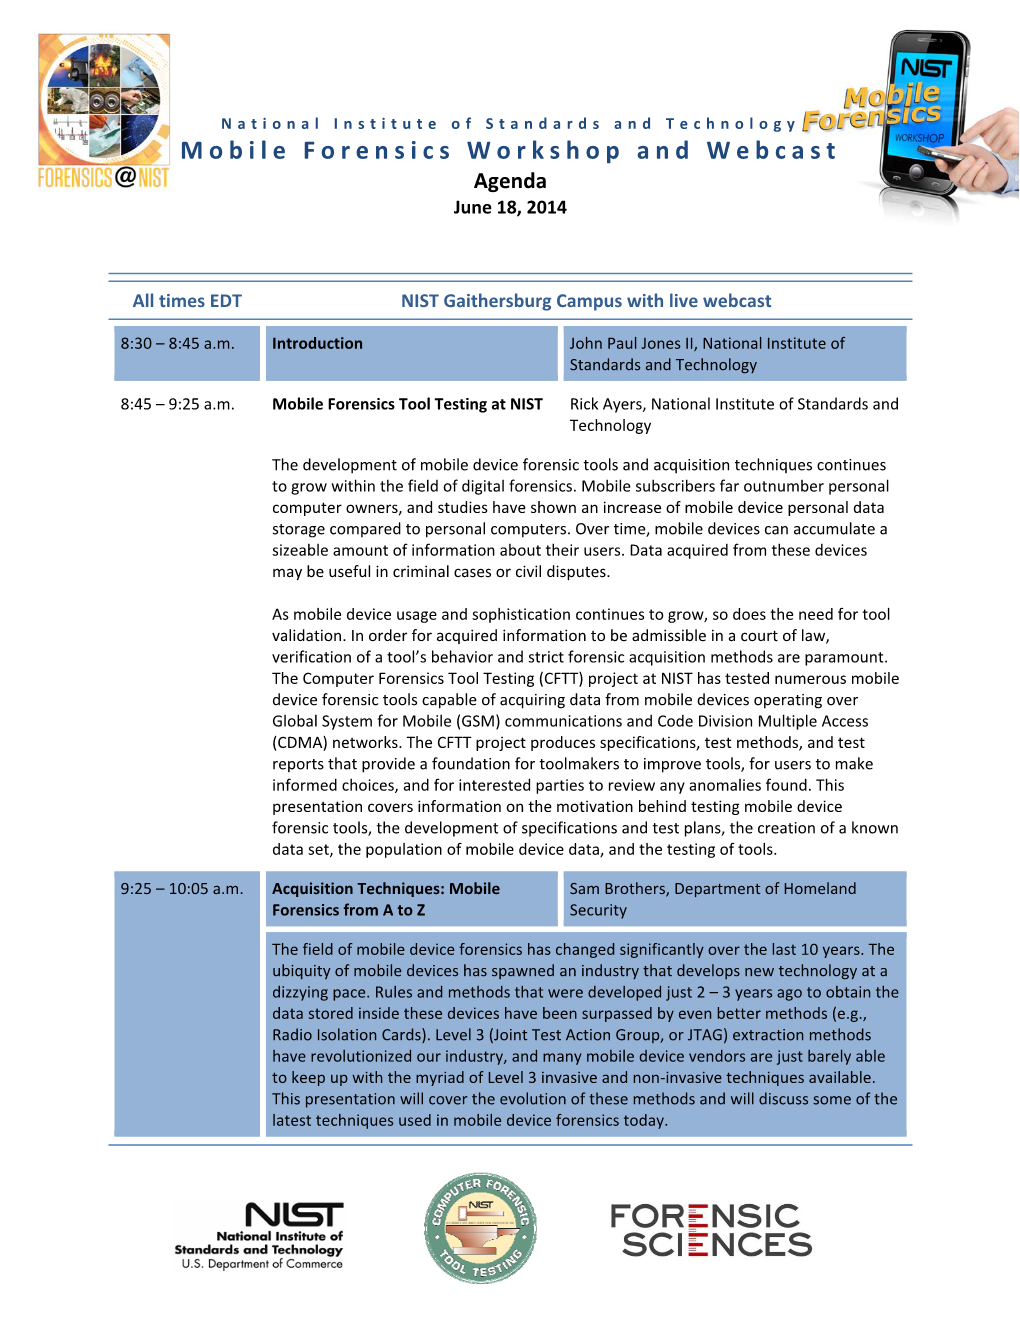 Mobile Forensics Workshop and Webcast Agenda June 18, 2014